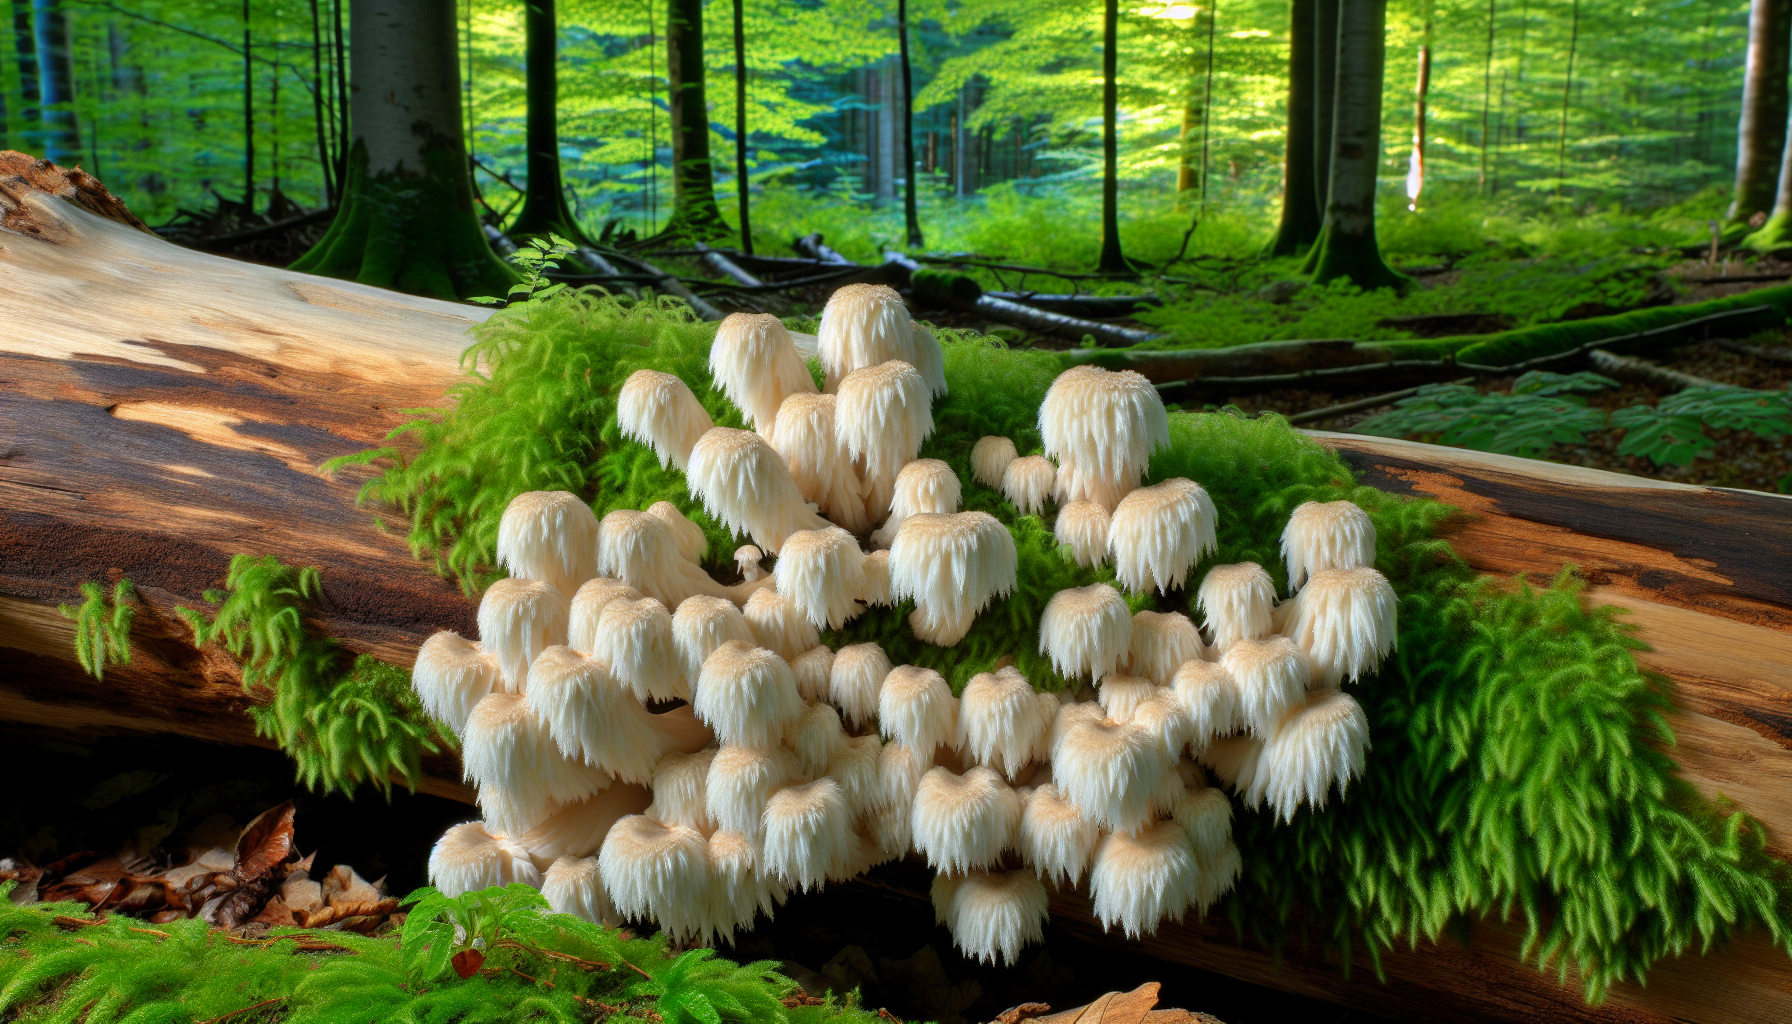 Lion's Mane Mushroom Overview - A cluster of lion's mane mushrooms growing on a dead broadleaf tree trunk